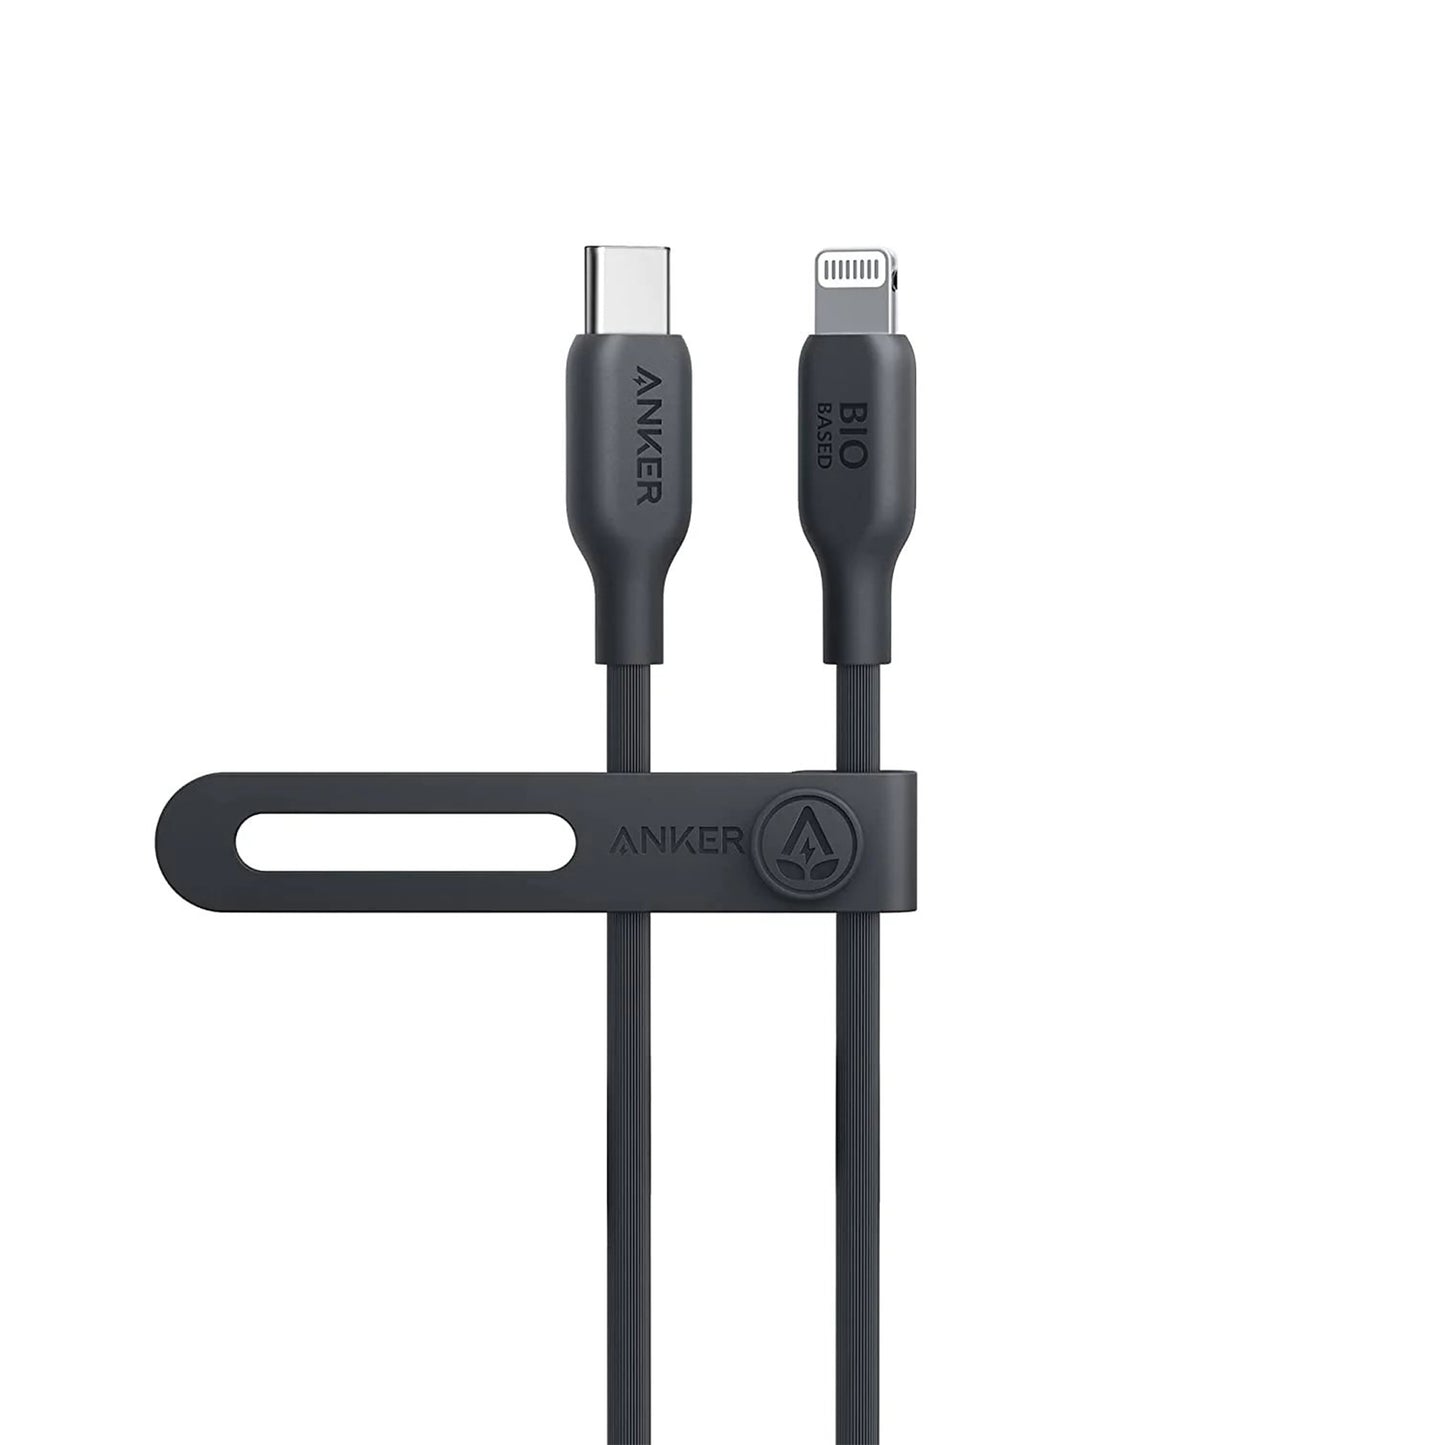 ANKER Bio-Based USB-C to Lightning Cable 3ft - Phantom Black